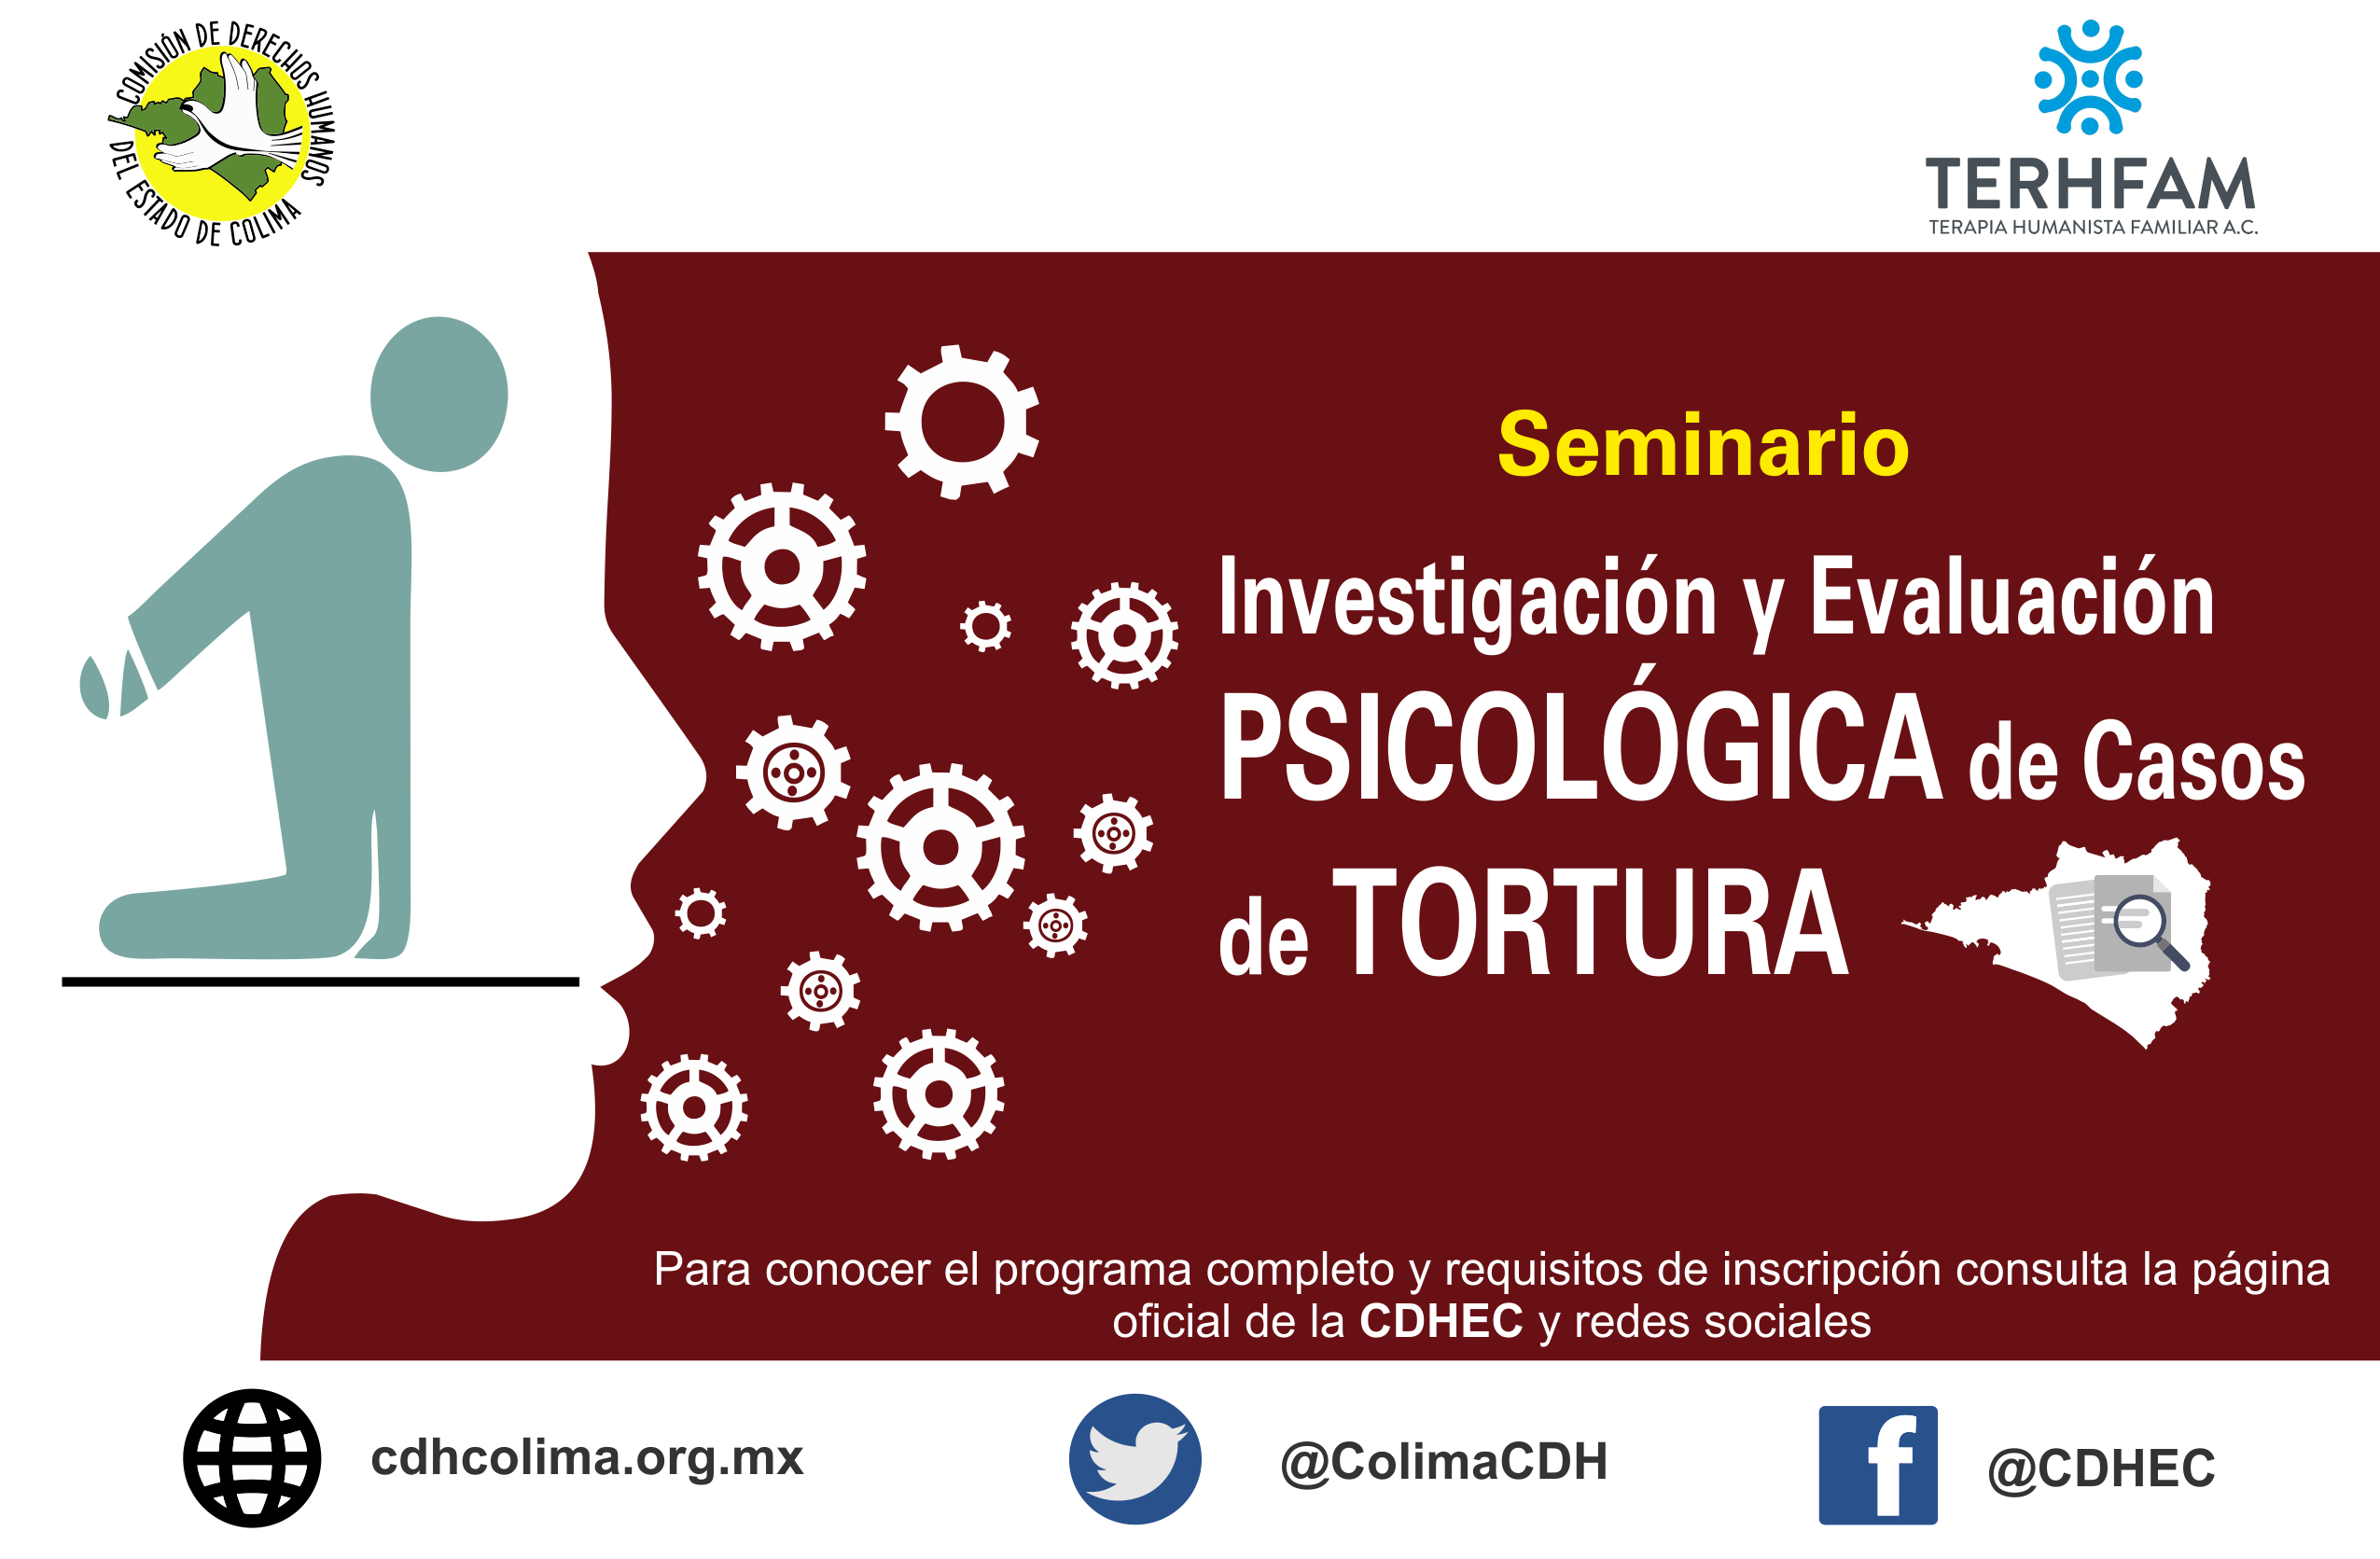 Seminario sobre “Investigación y Evaluación Psicológica de Casos de Tortura”